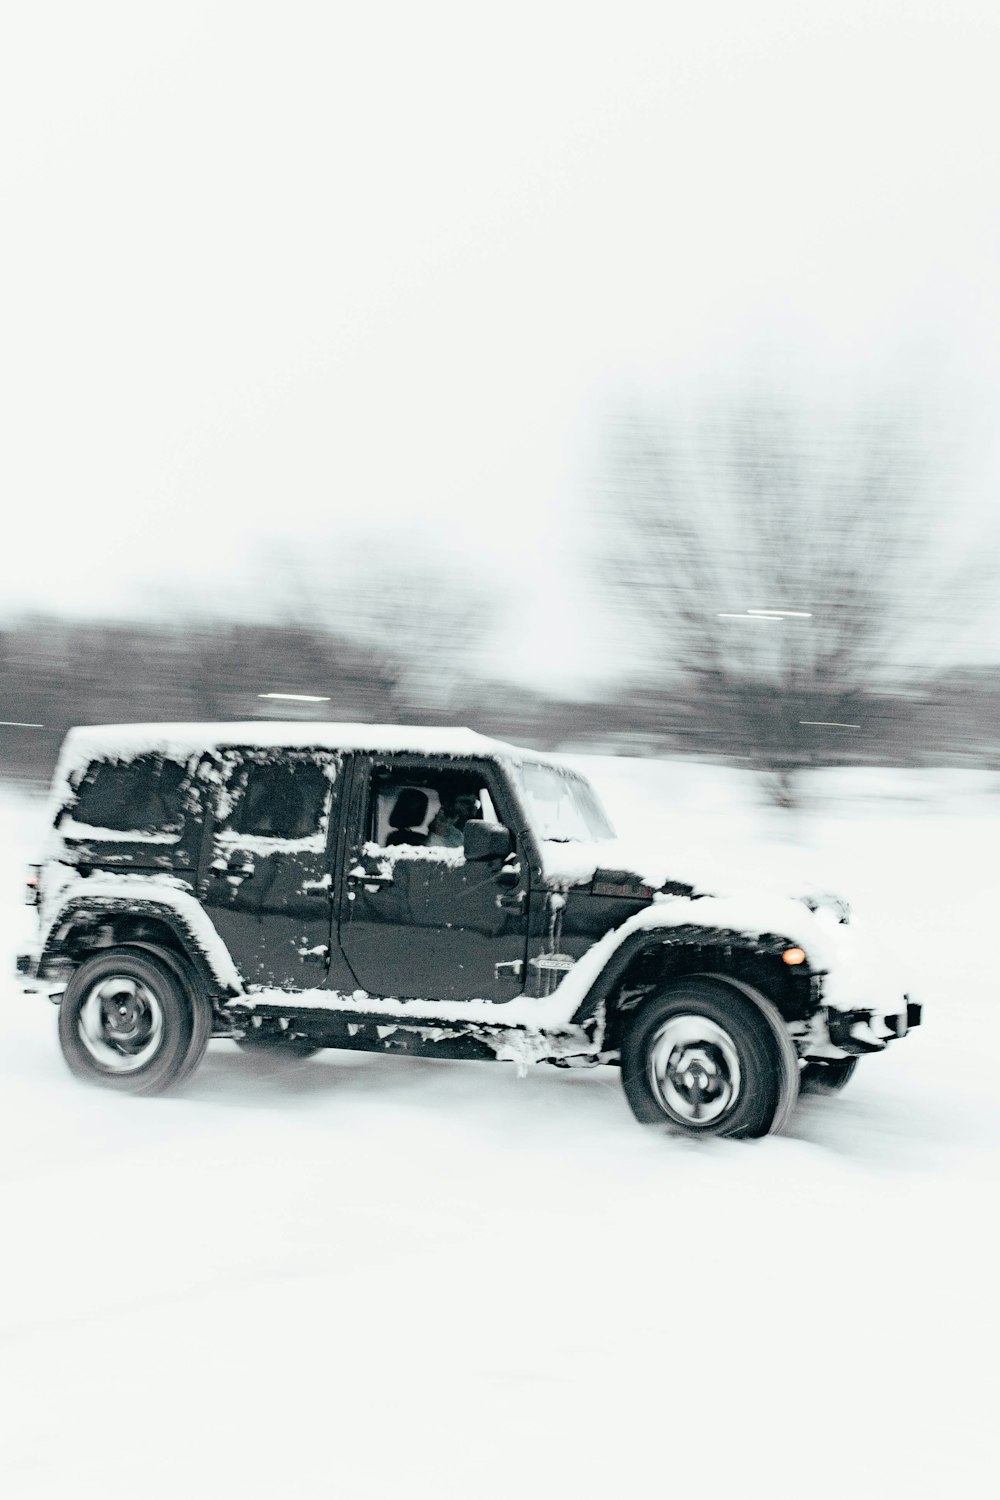 Uma foto em preto e branco de um jipe na neve